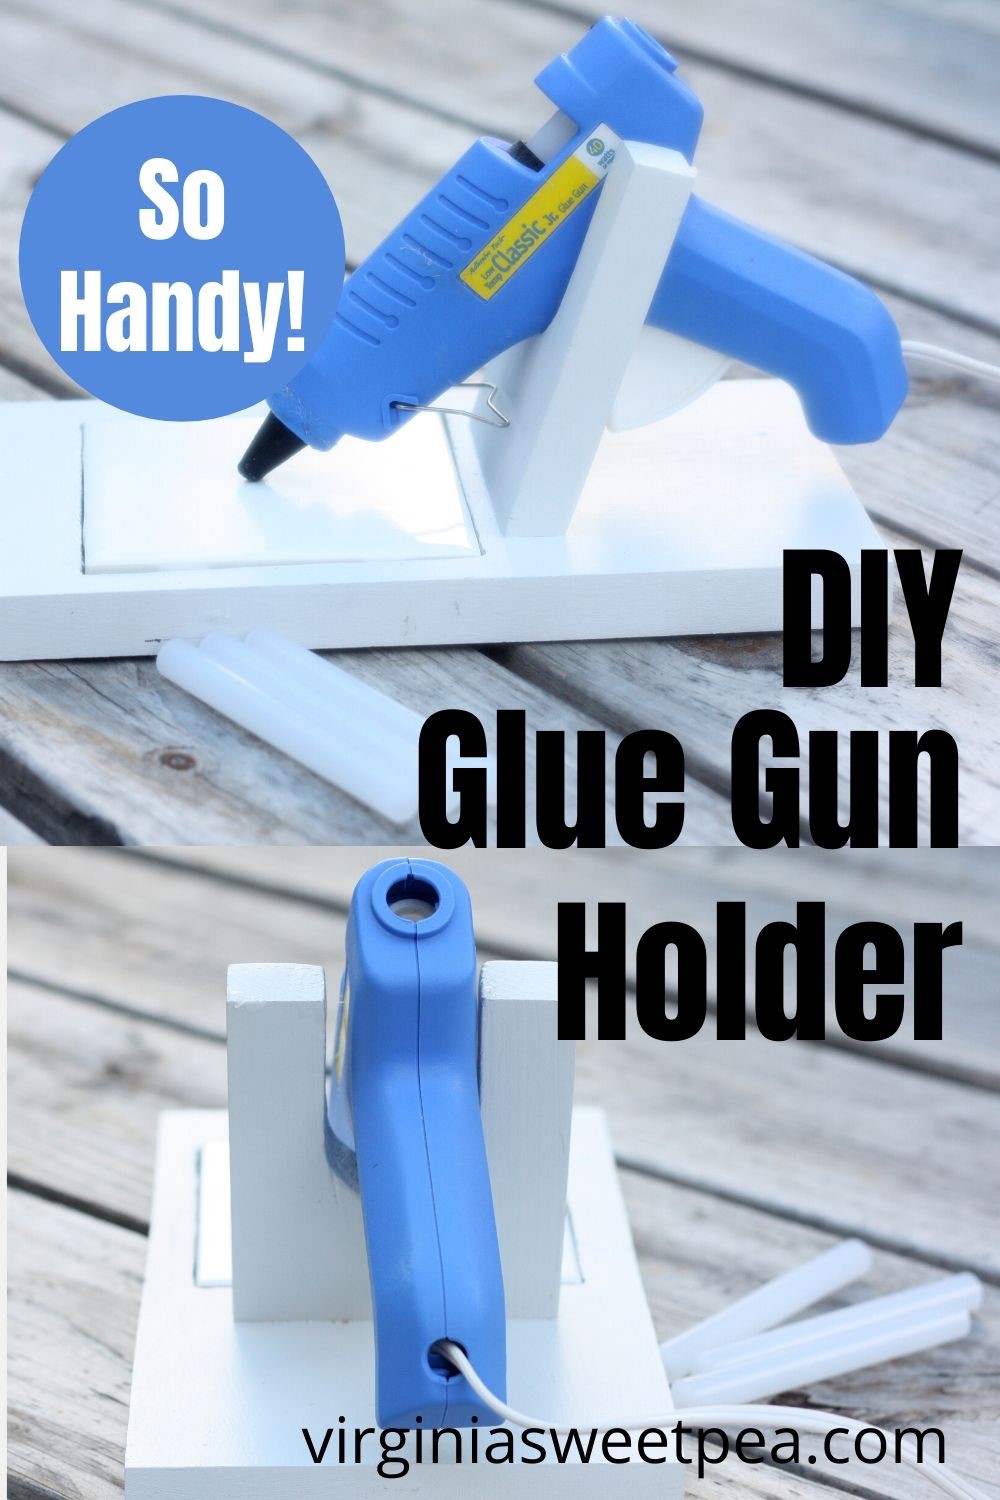 25 Fun and Easy Hot Glue Gun Crafts